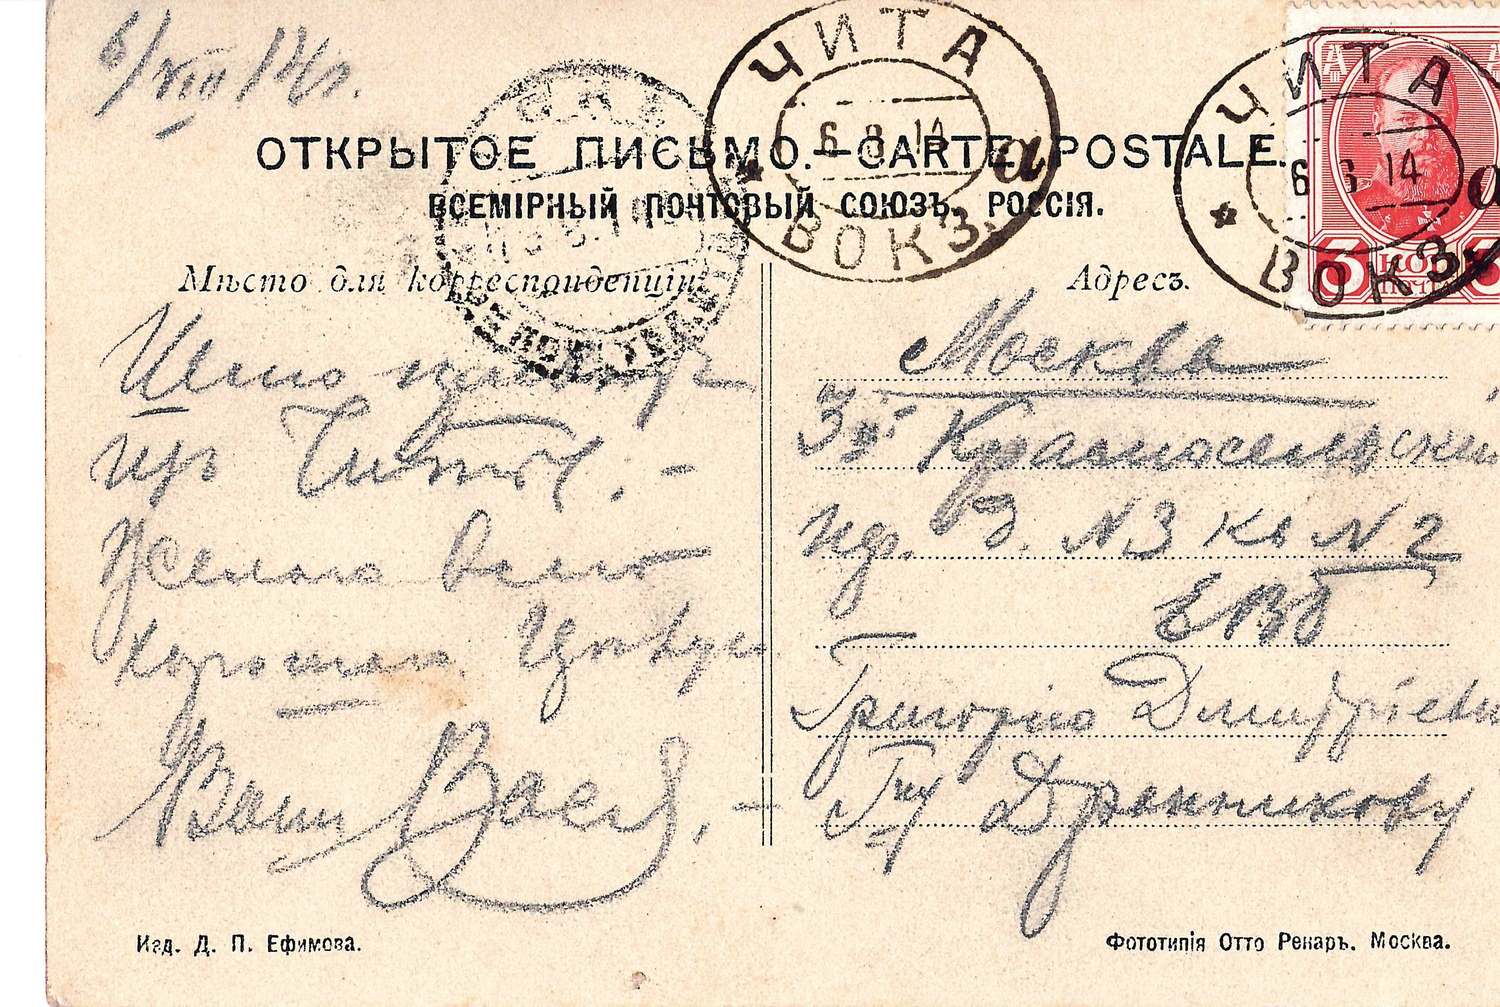 Открытка «Казнь хунхузов». Издание Д.П. Ефимова, 1910-е годы.